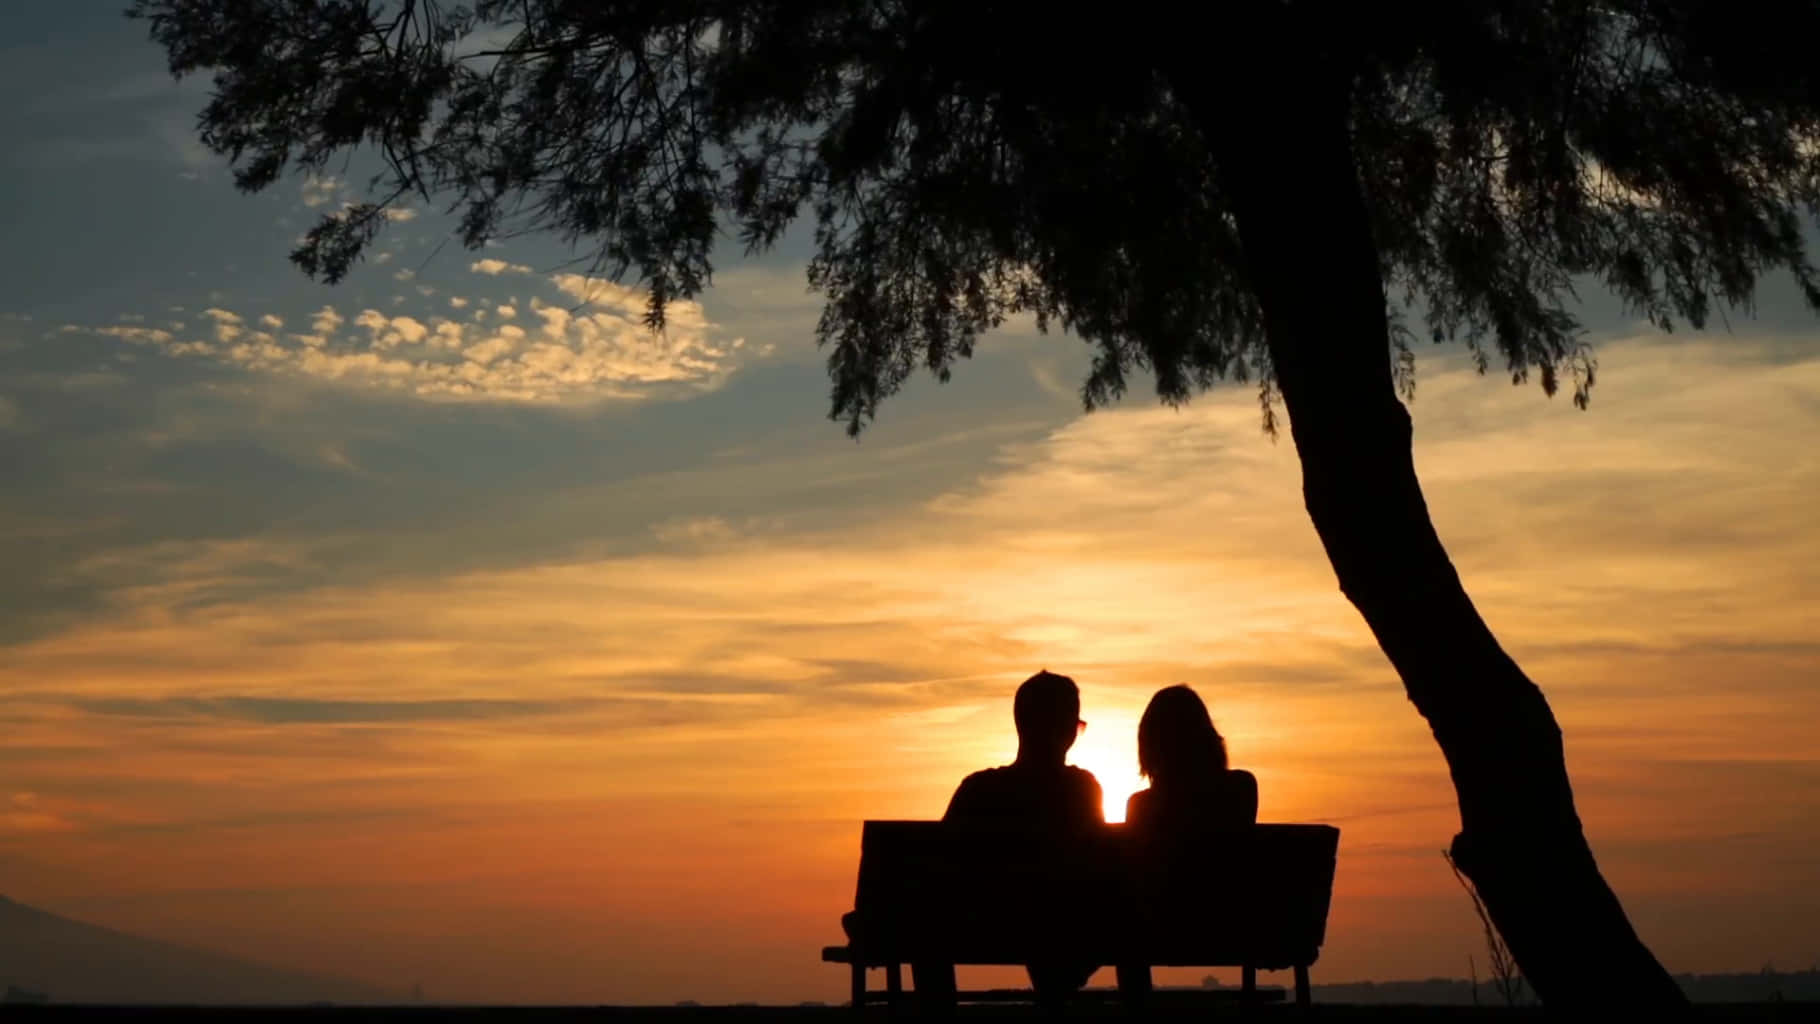 Par siddende på bænk, billedtapet af solnedgang under et træ